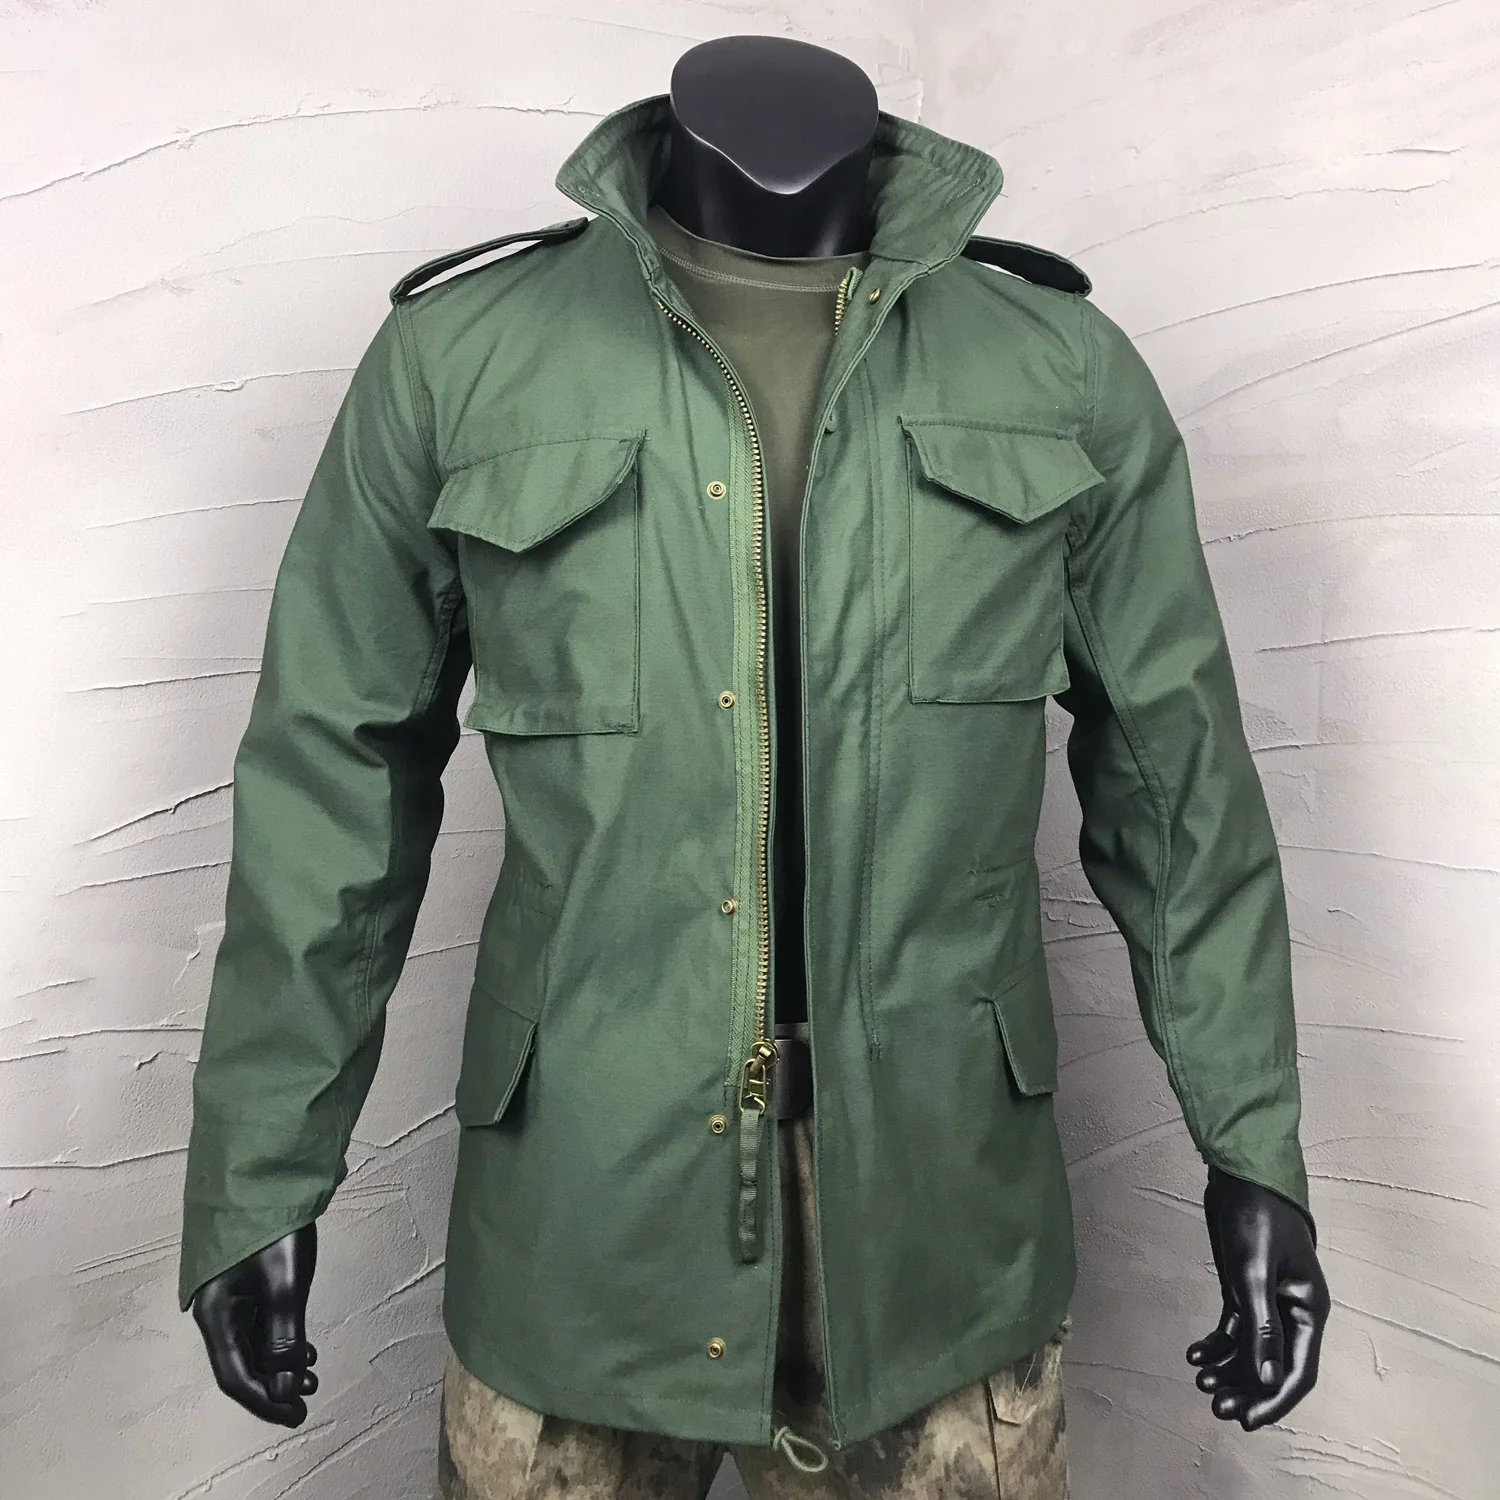 Outdoor Field Commander Camouflage Windbreaker Waterproof Wear-resistant Windproof Military Uniform Men Tactical Shooting Jacket